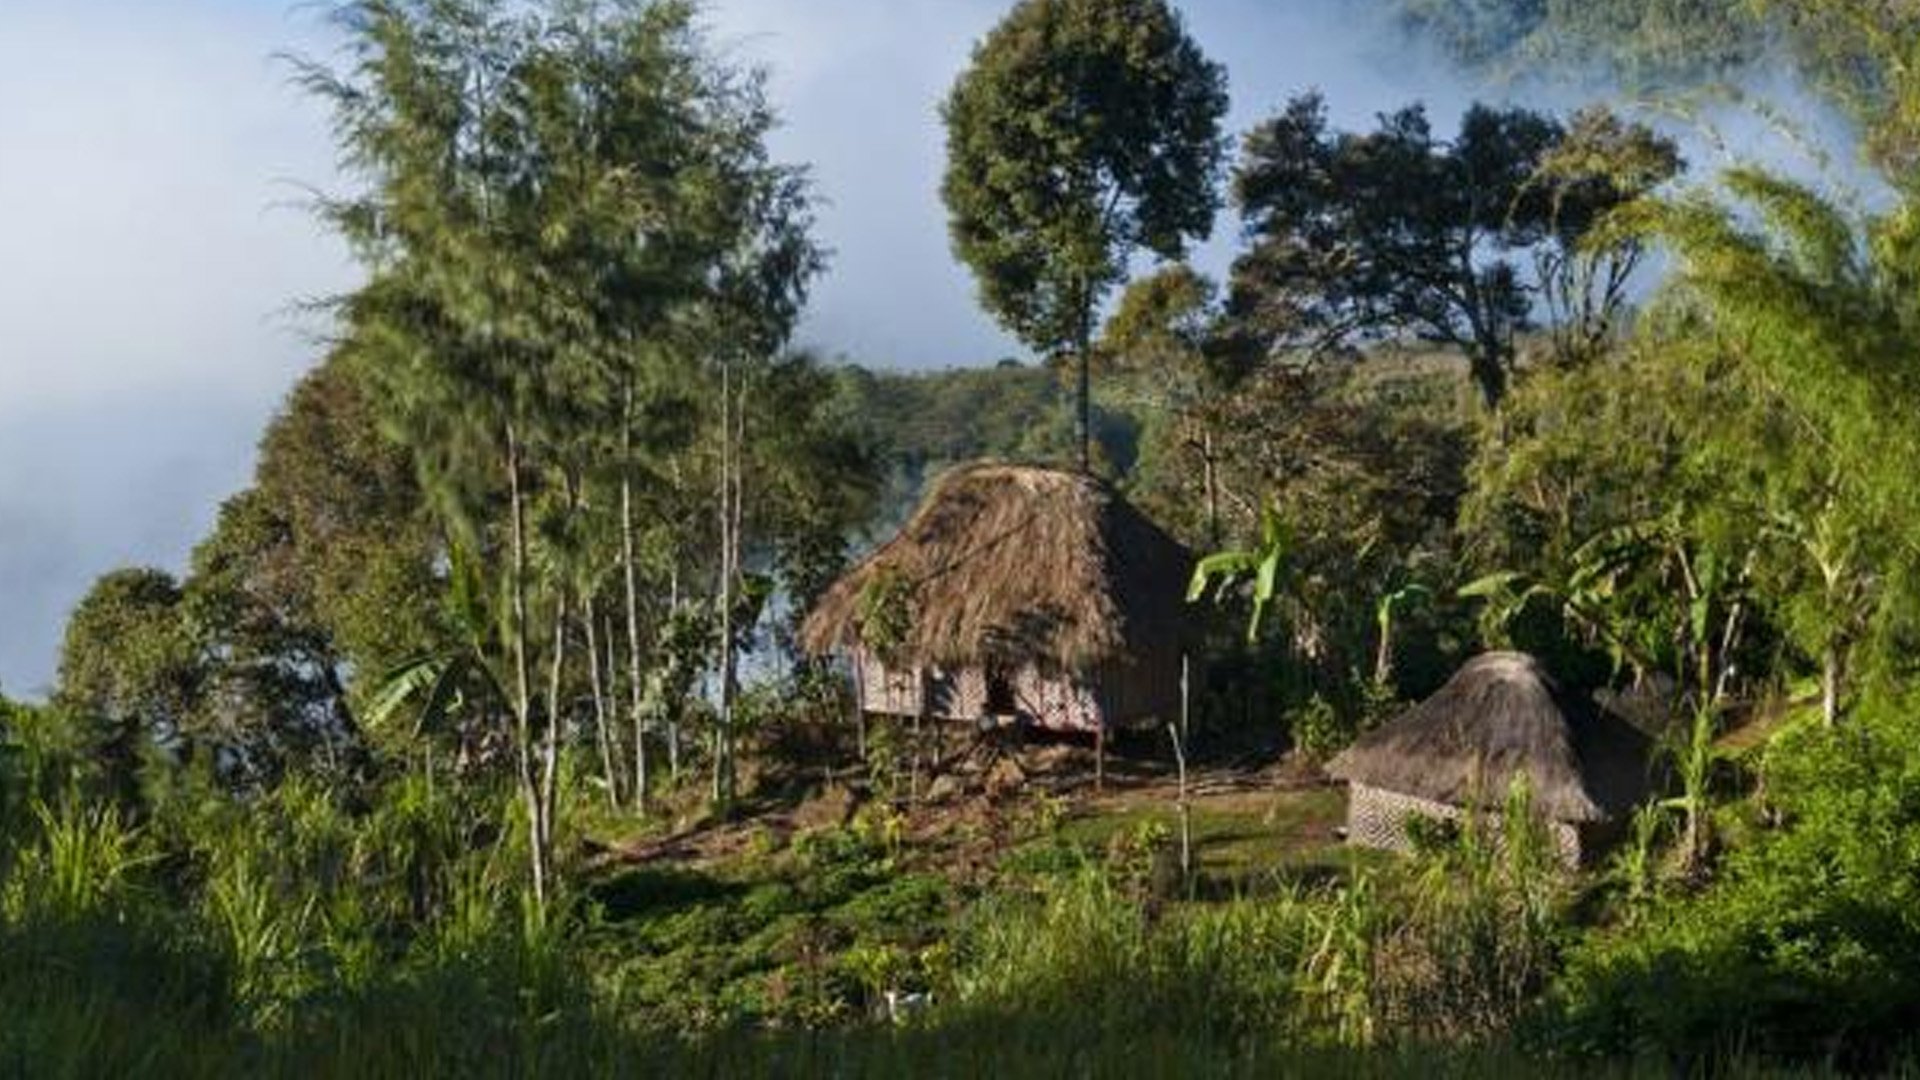 पपुवा न्यू गिनीको पहाडी इलाकामा भएको जातीय भिडन्तमा कम्तीमा ६४ जनाको मृत्यु